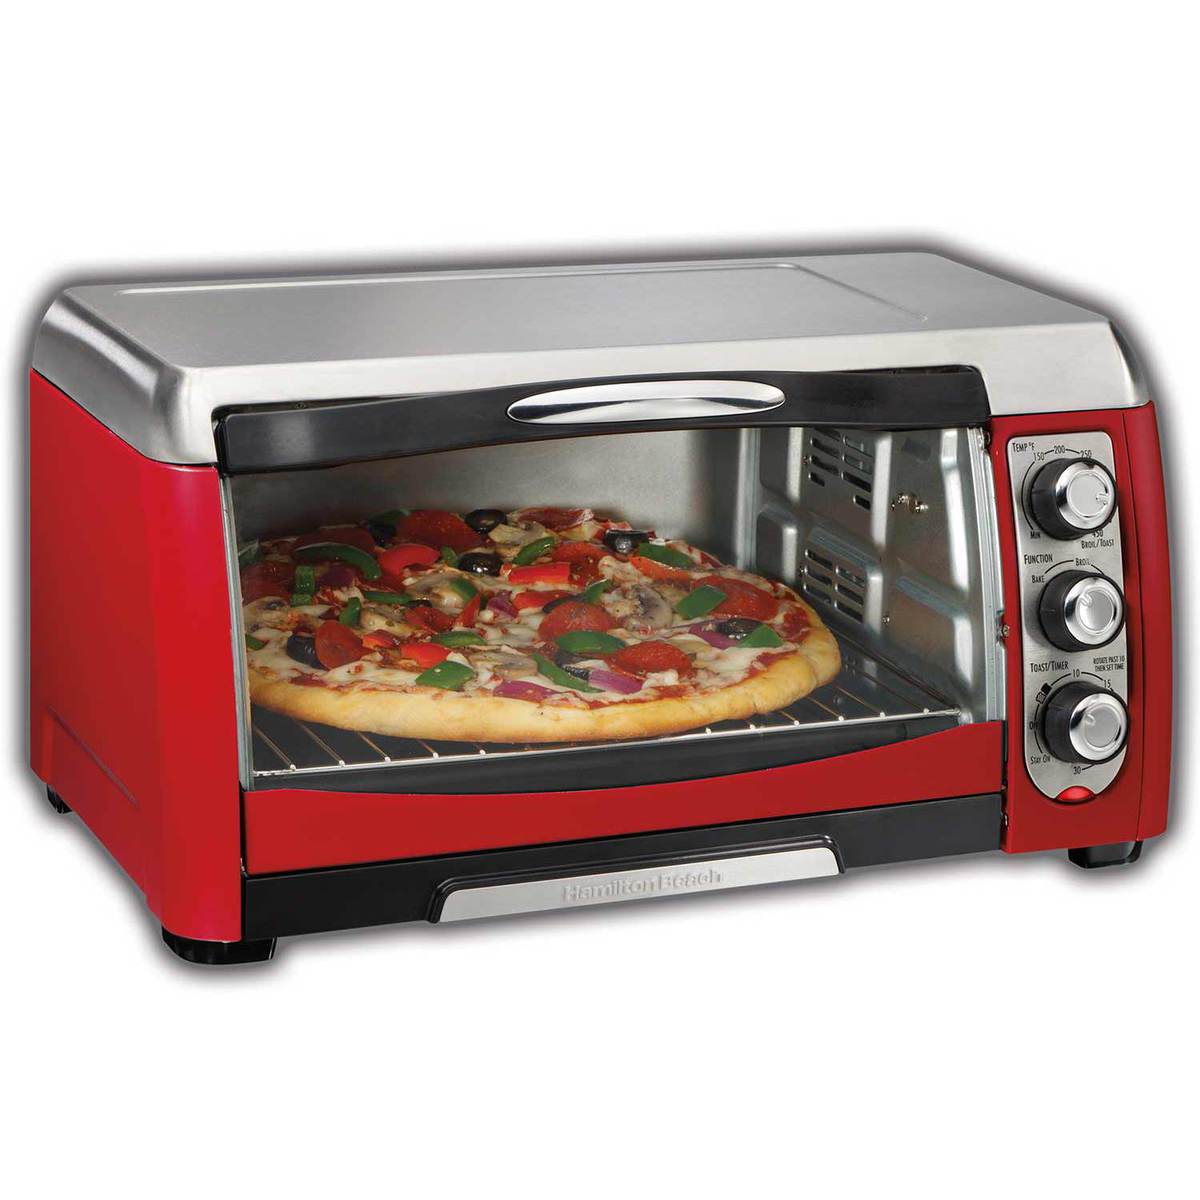 ensemble™ 6 Slice Toaster Oven (31335)